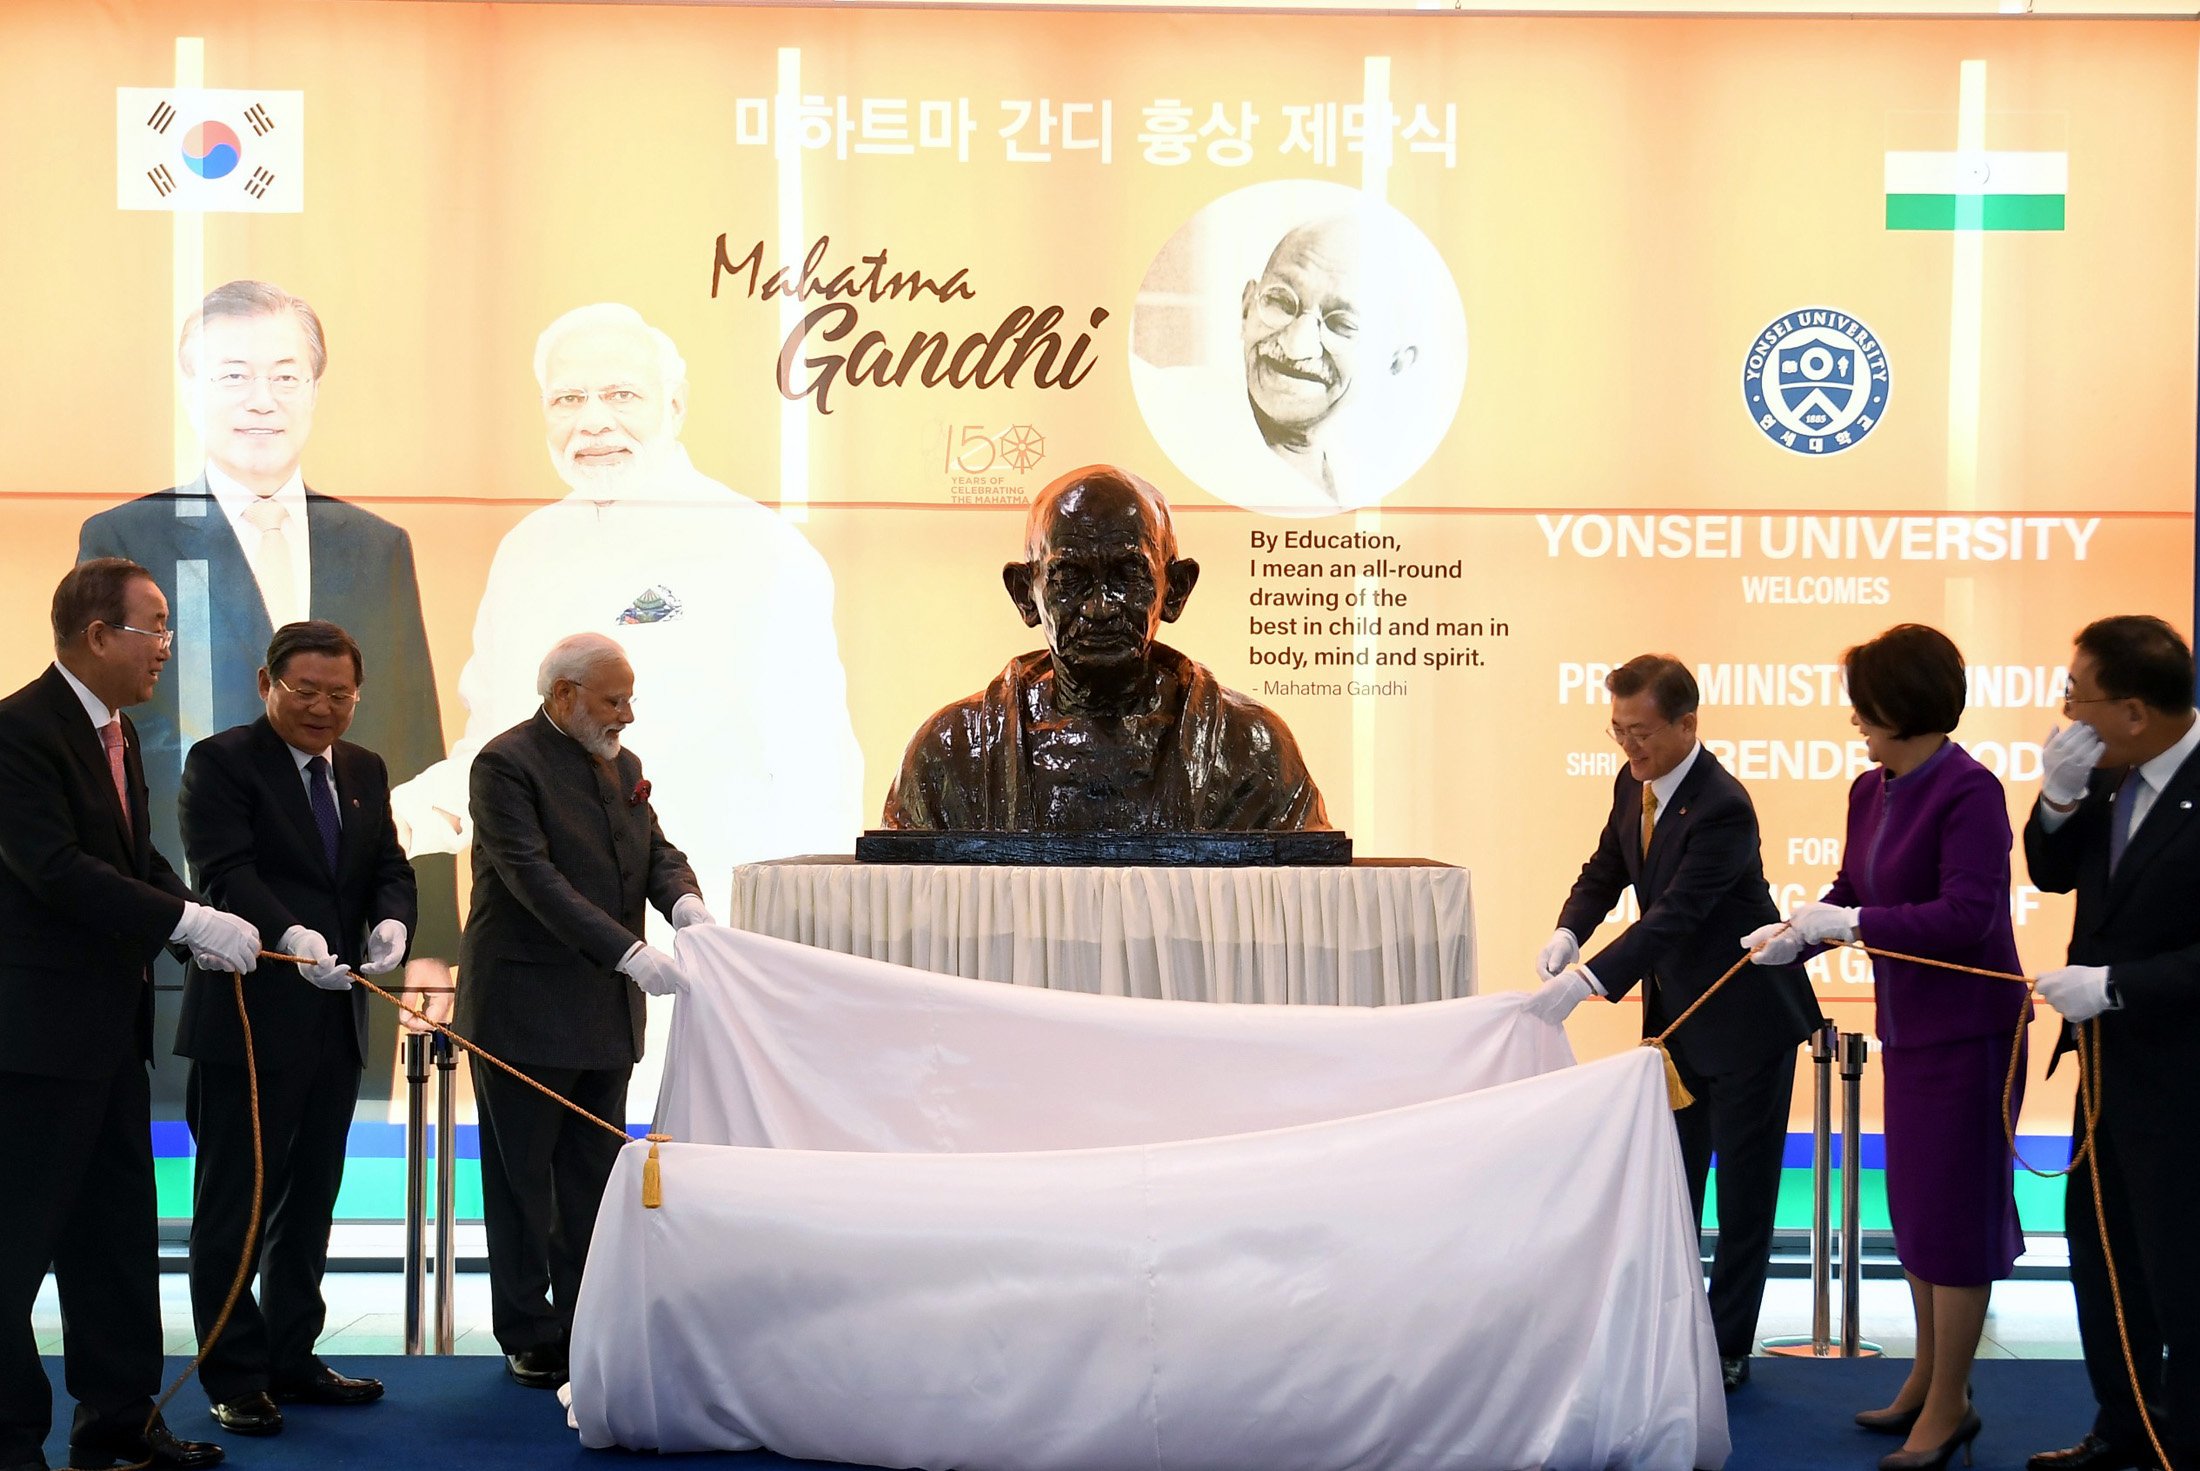 वैश्विक हैं गांधी : सियोल में पीएम मोदी ने किया था राष्ट्रपिता की प्रतिमा का अनावरण